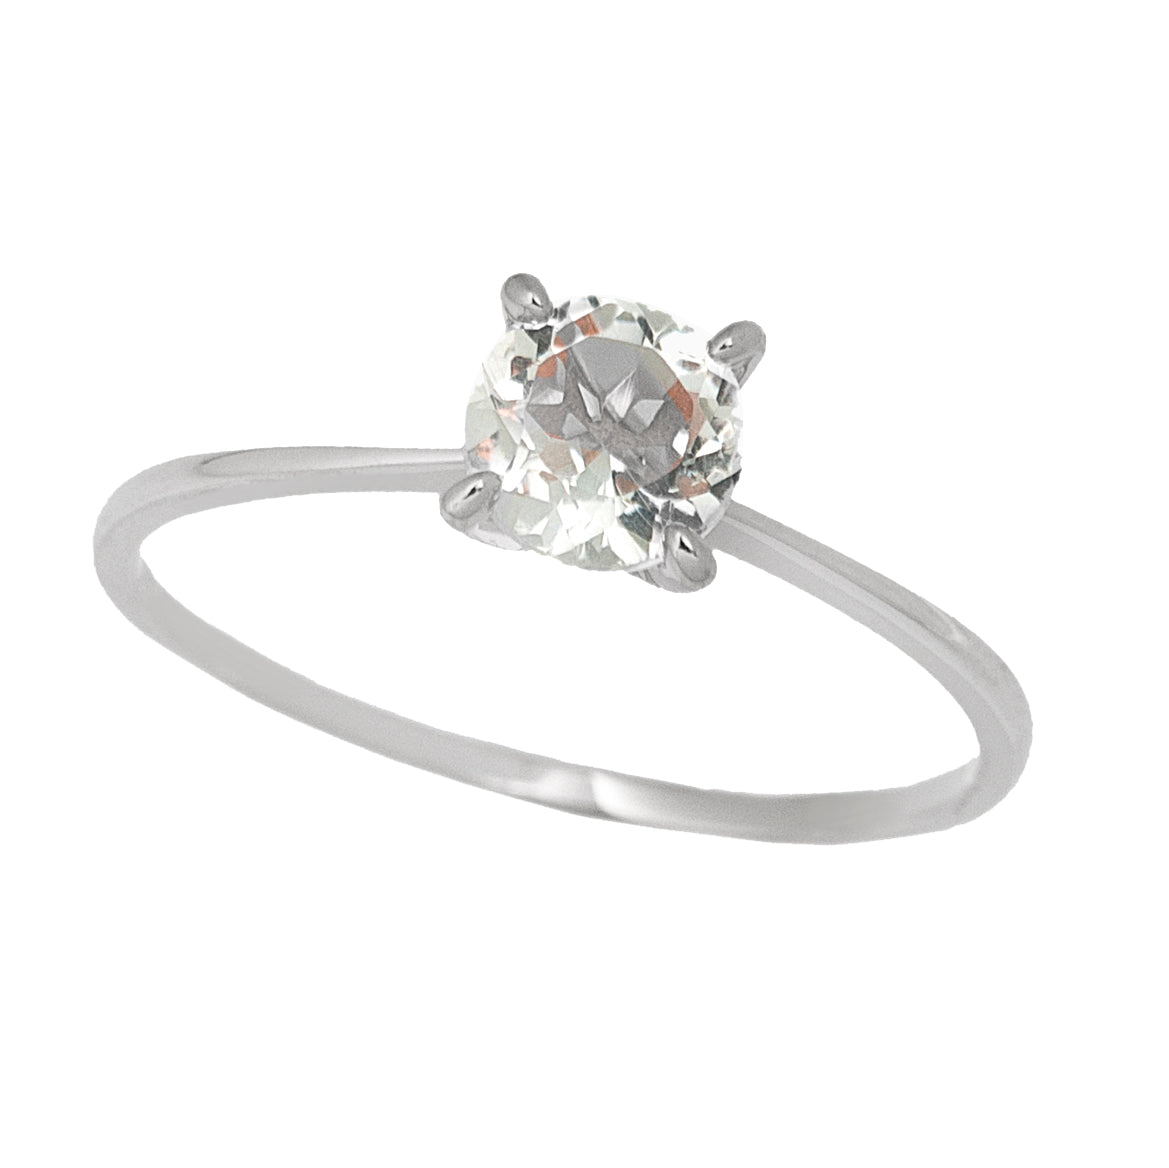 Silver Simple Gemstone Rings